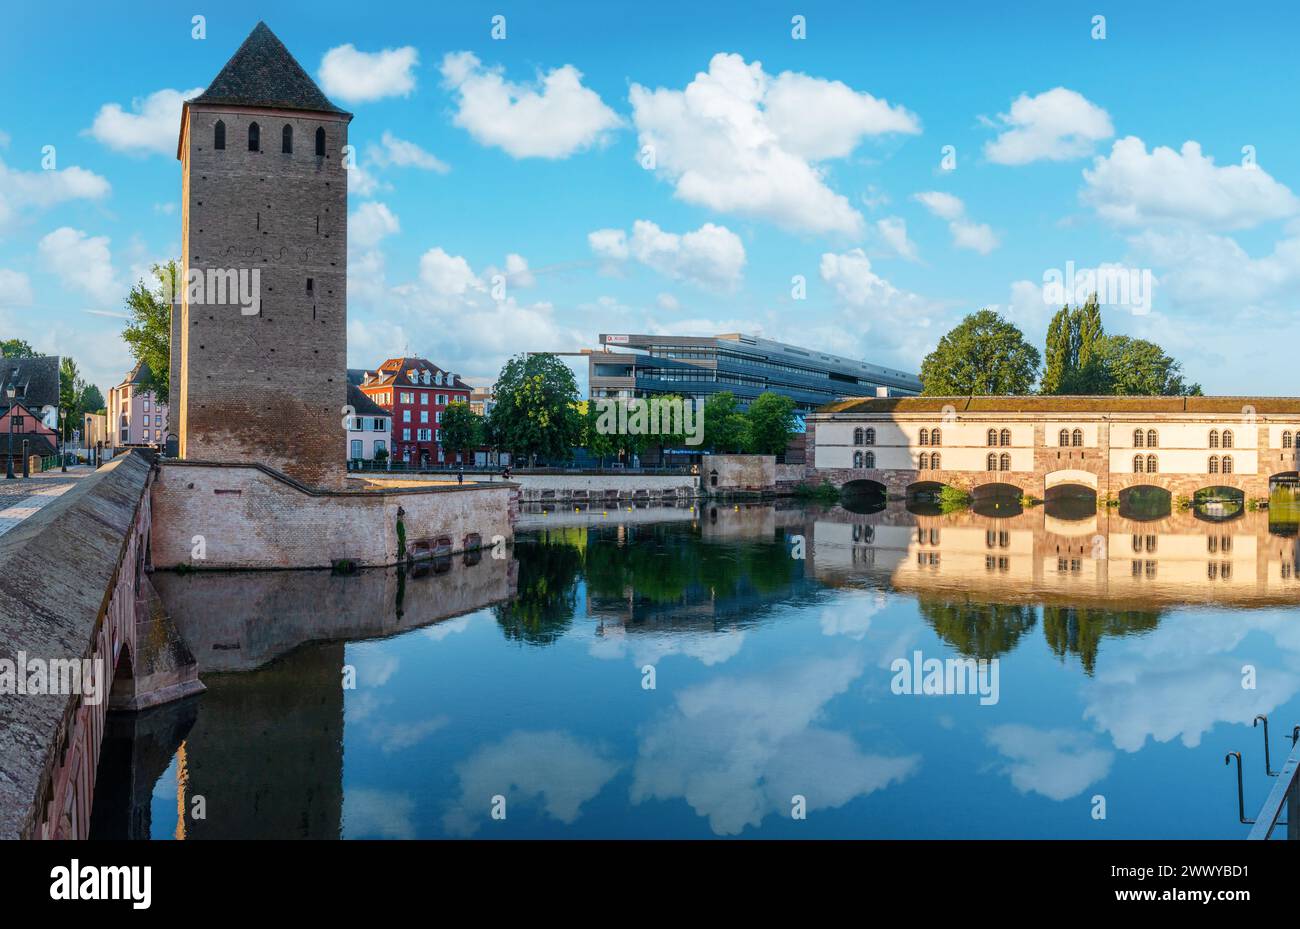 La tour des ponts couverts à Strasbourg au ciel nuageux bleu. France. Banque D'Images